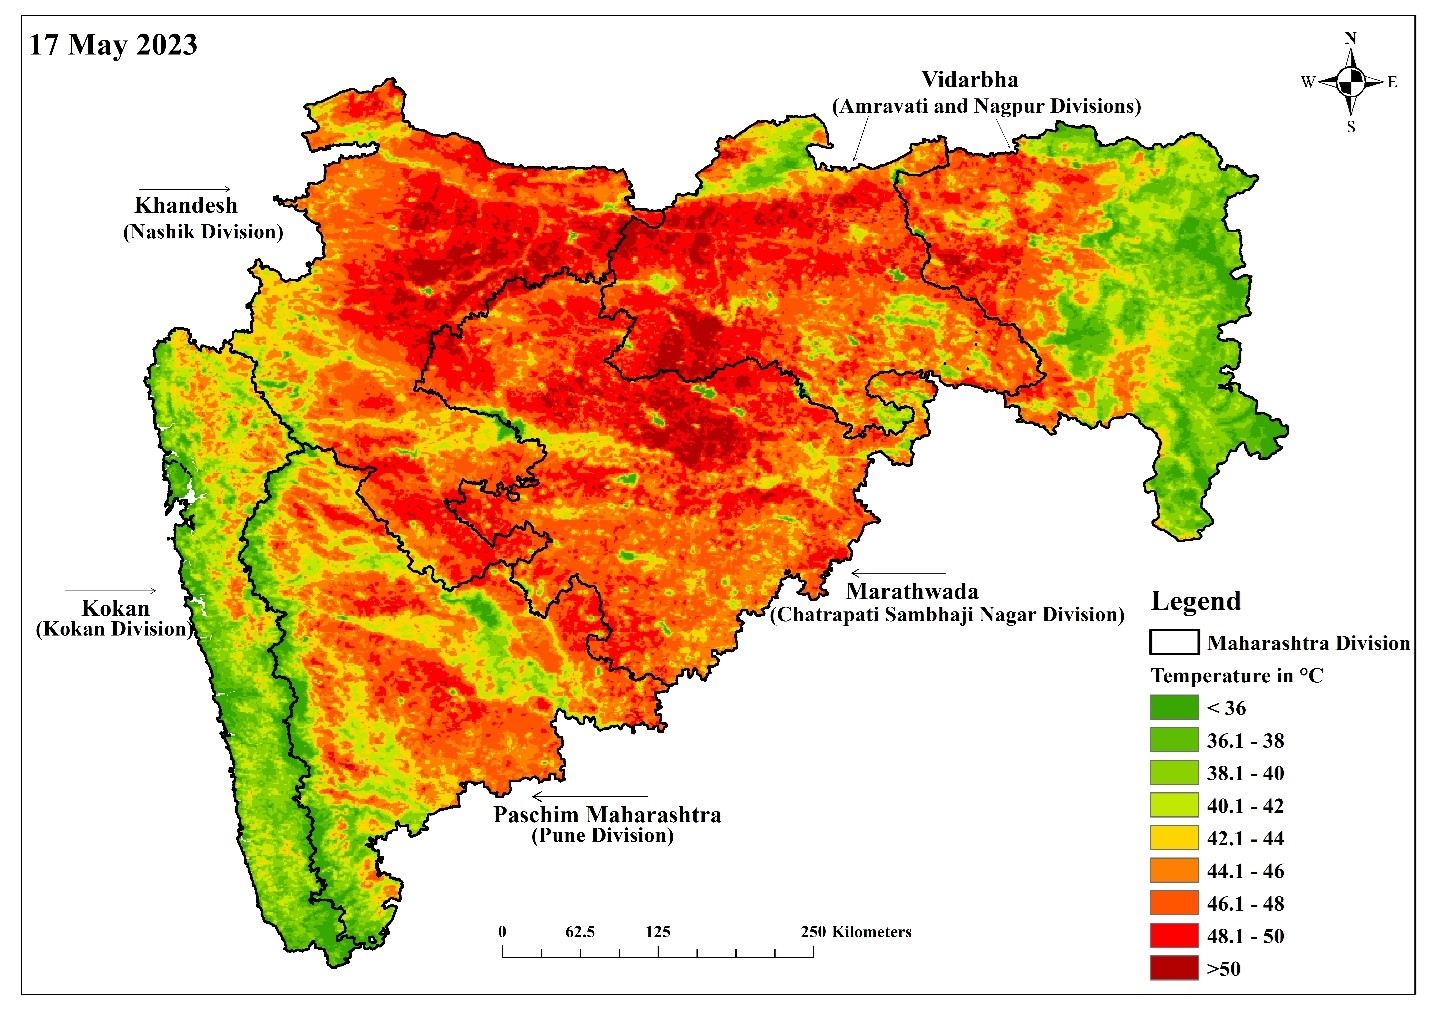 Land Surface Temperature across Maharashtra on May 17